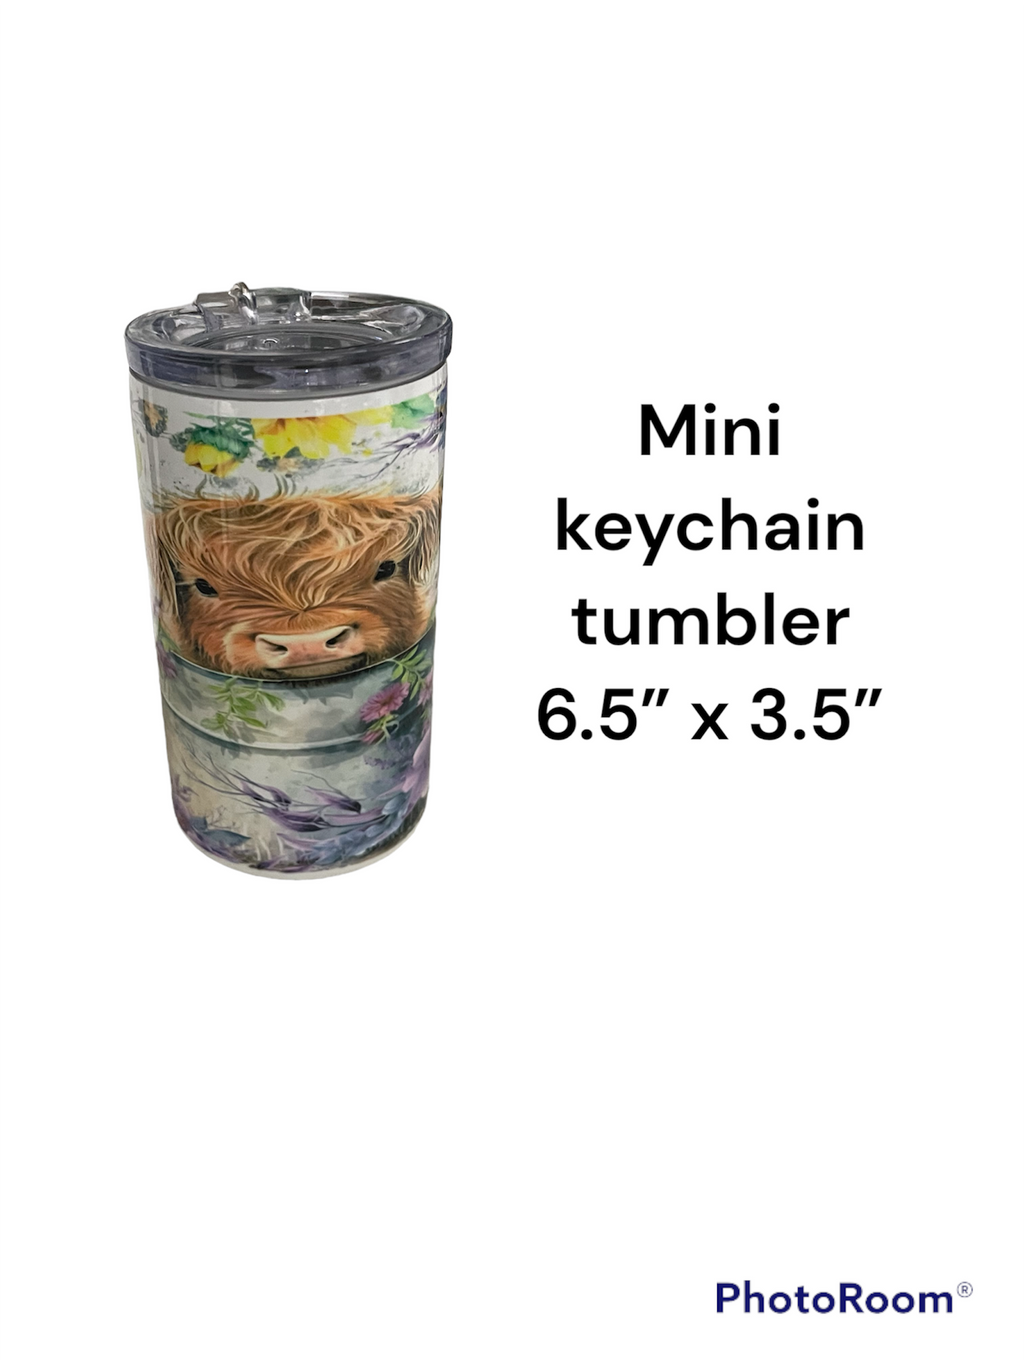 Mini cow tumbler keychain